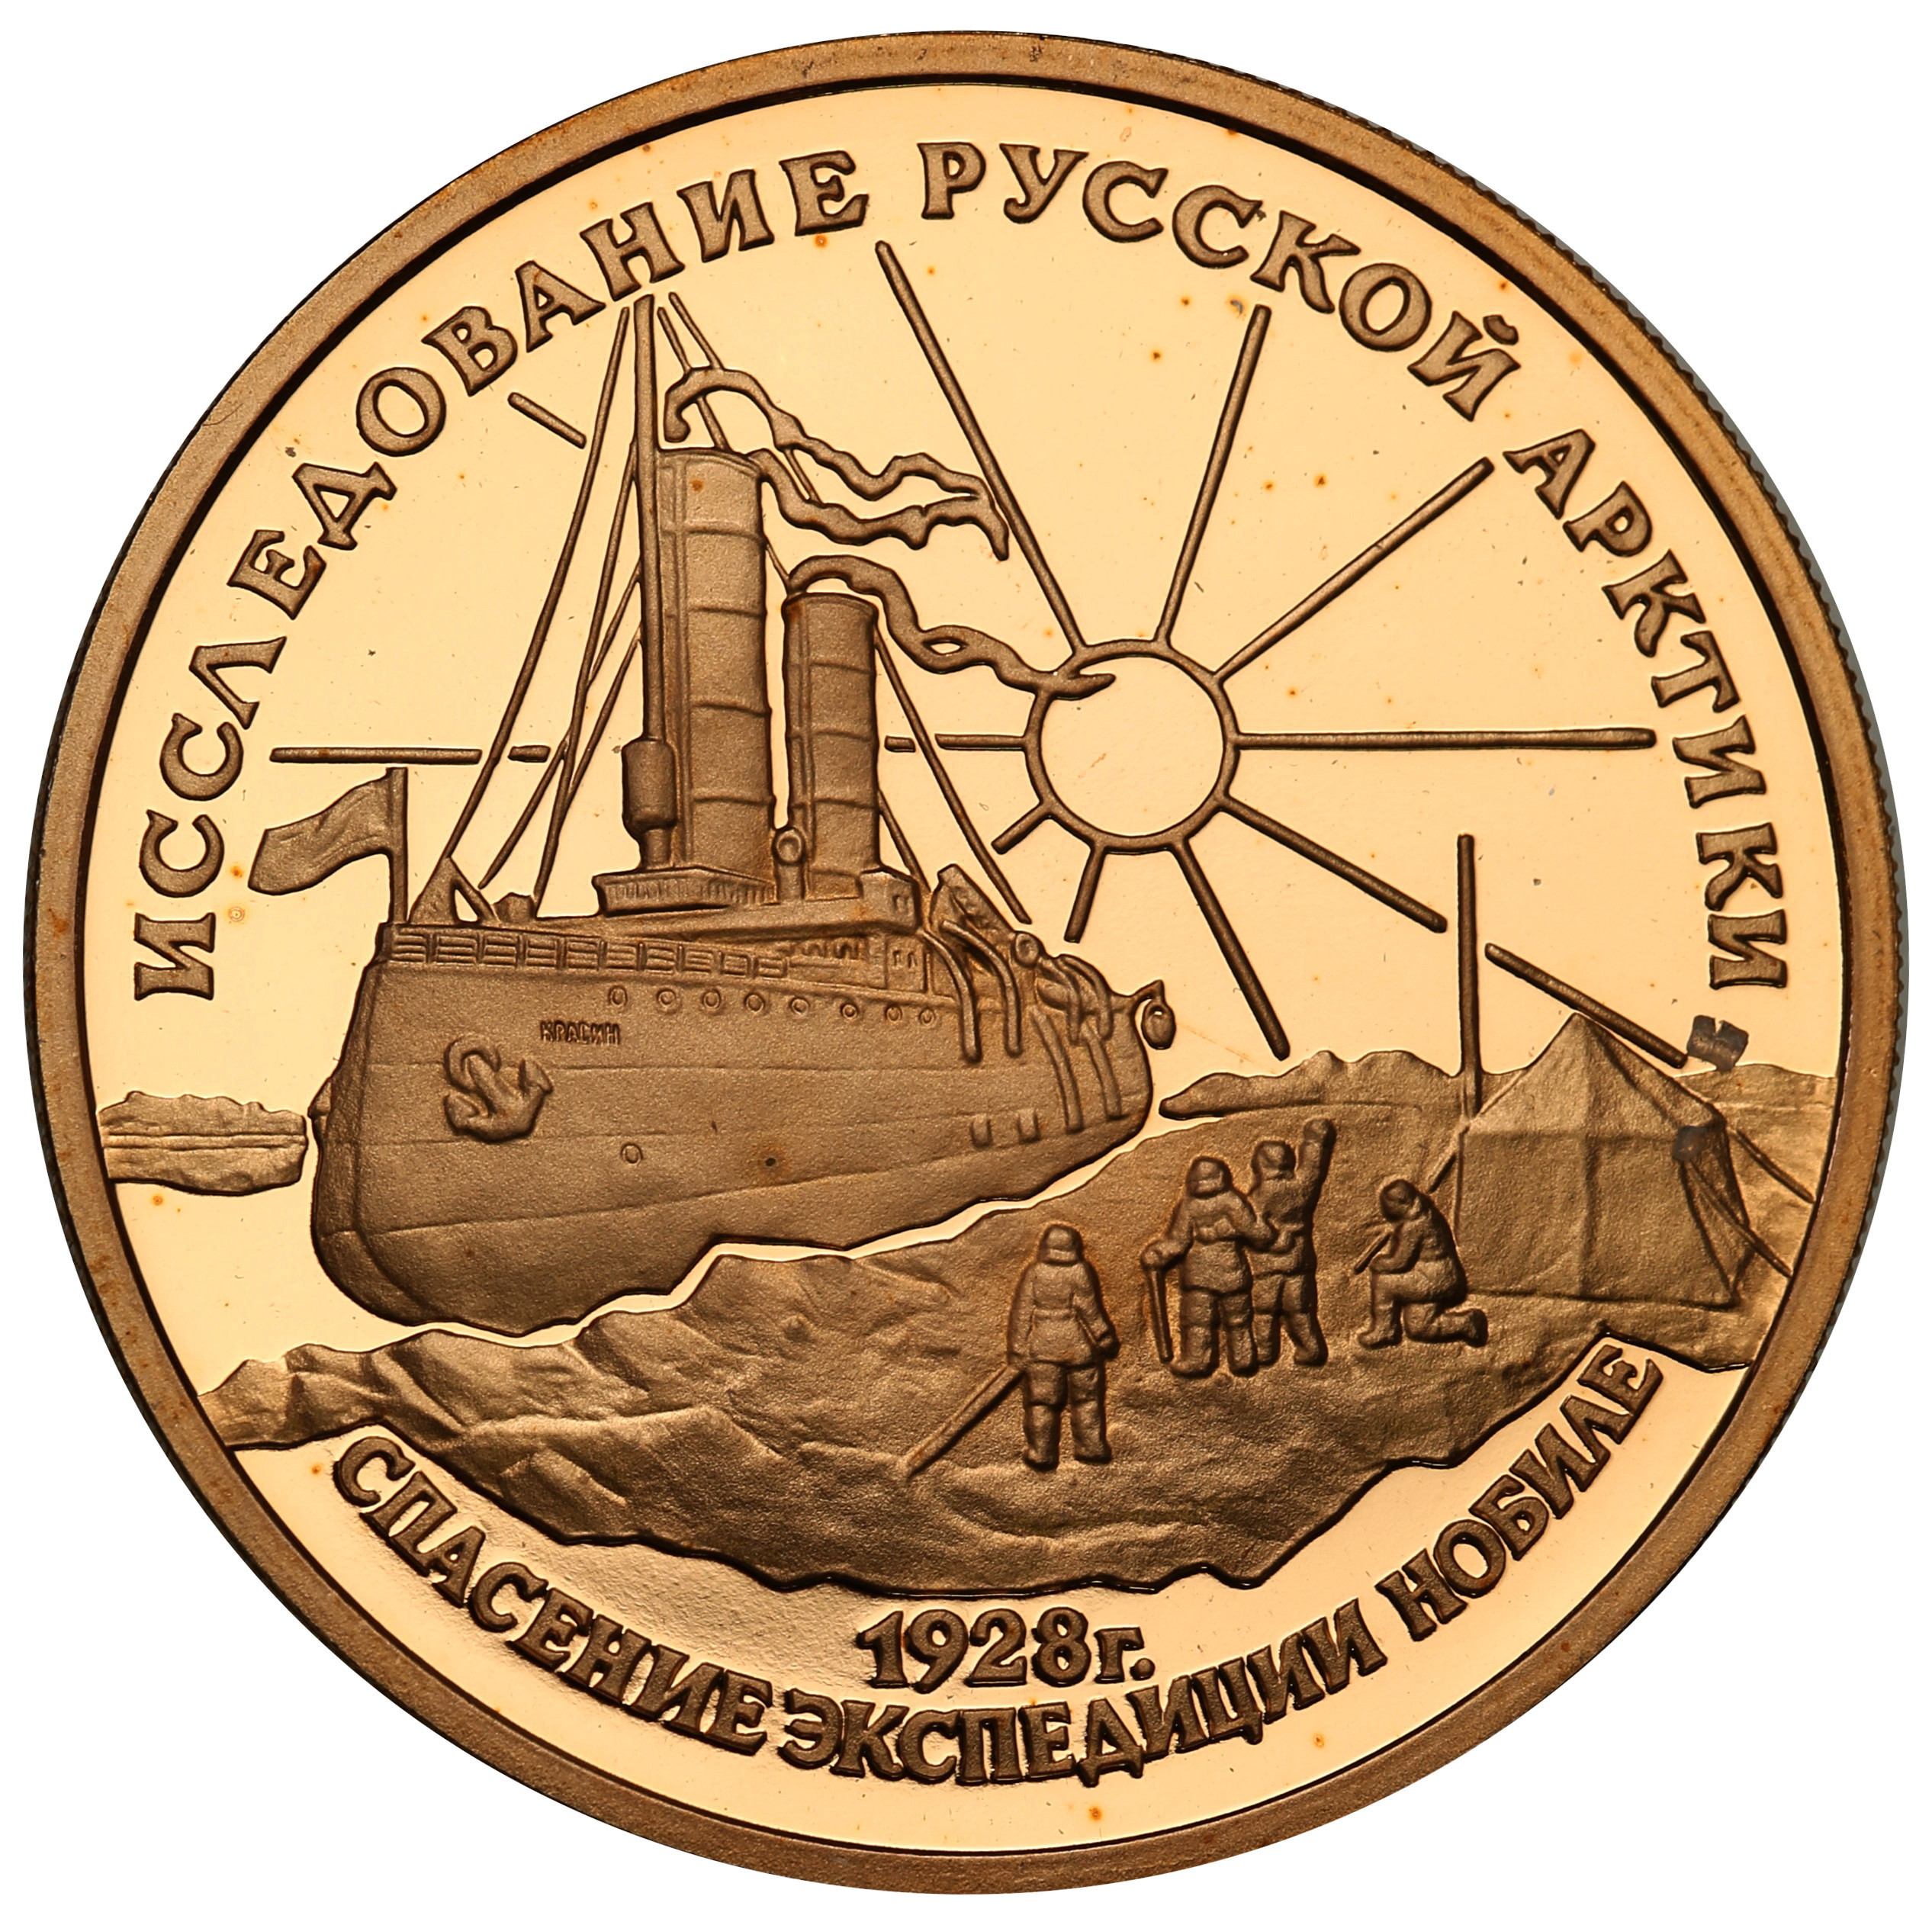 Rosja. 100 Rubli 1995 Nobile - eksploracja rosyjskiej Arktyki - ½ uncji złota st